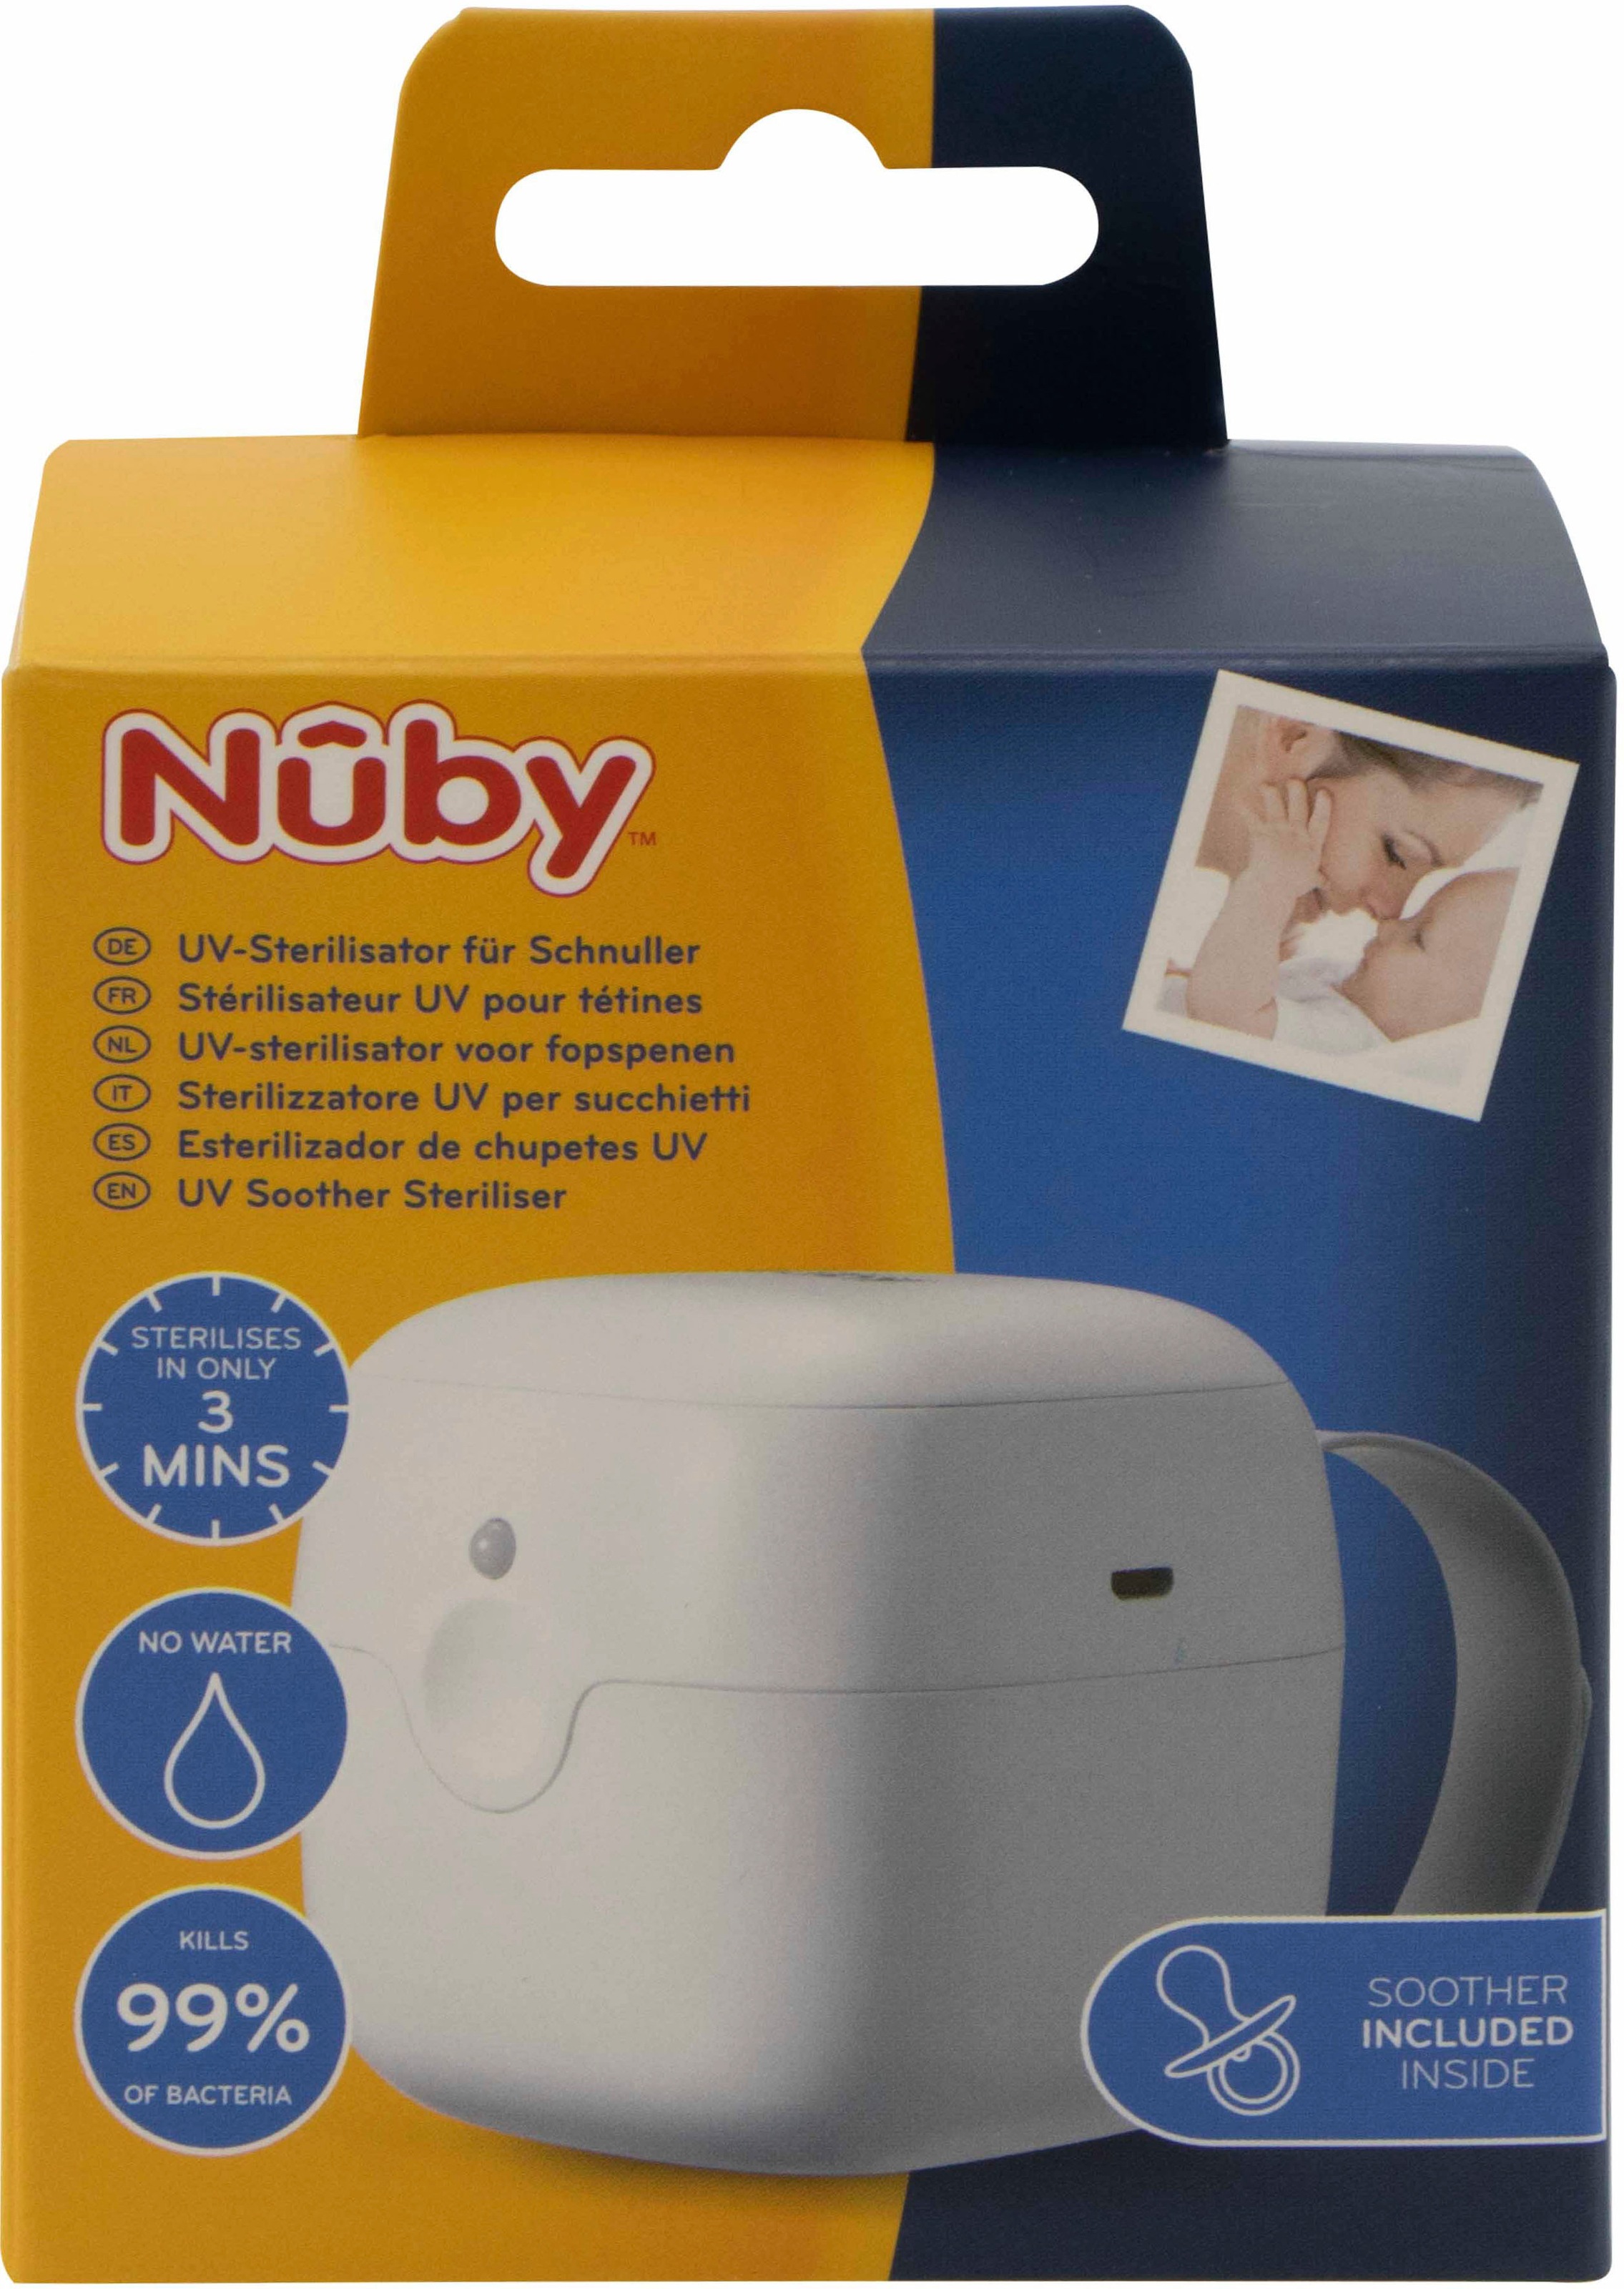 Nuby UV-Sterilisator, für Schnuller, tragbar